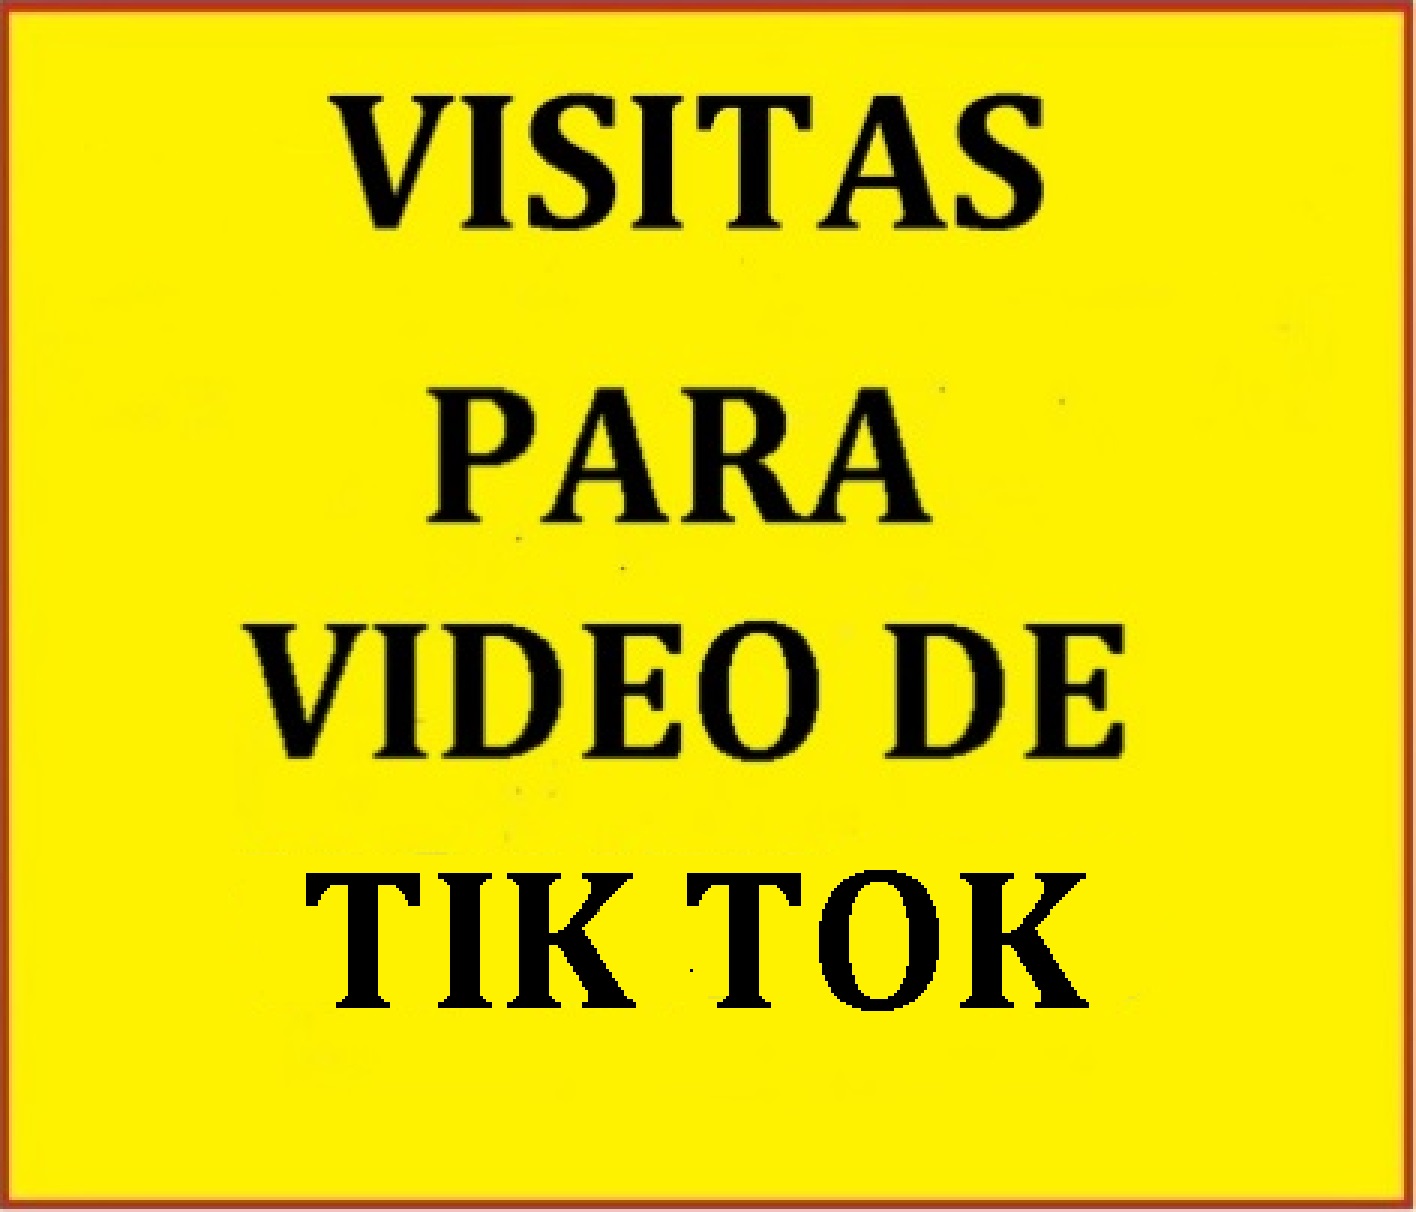 Agregare a su video de Tik tok 20.000 reproducciones.